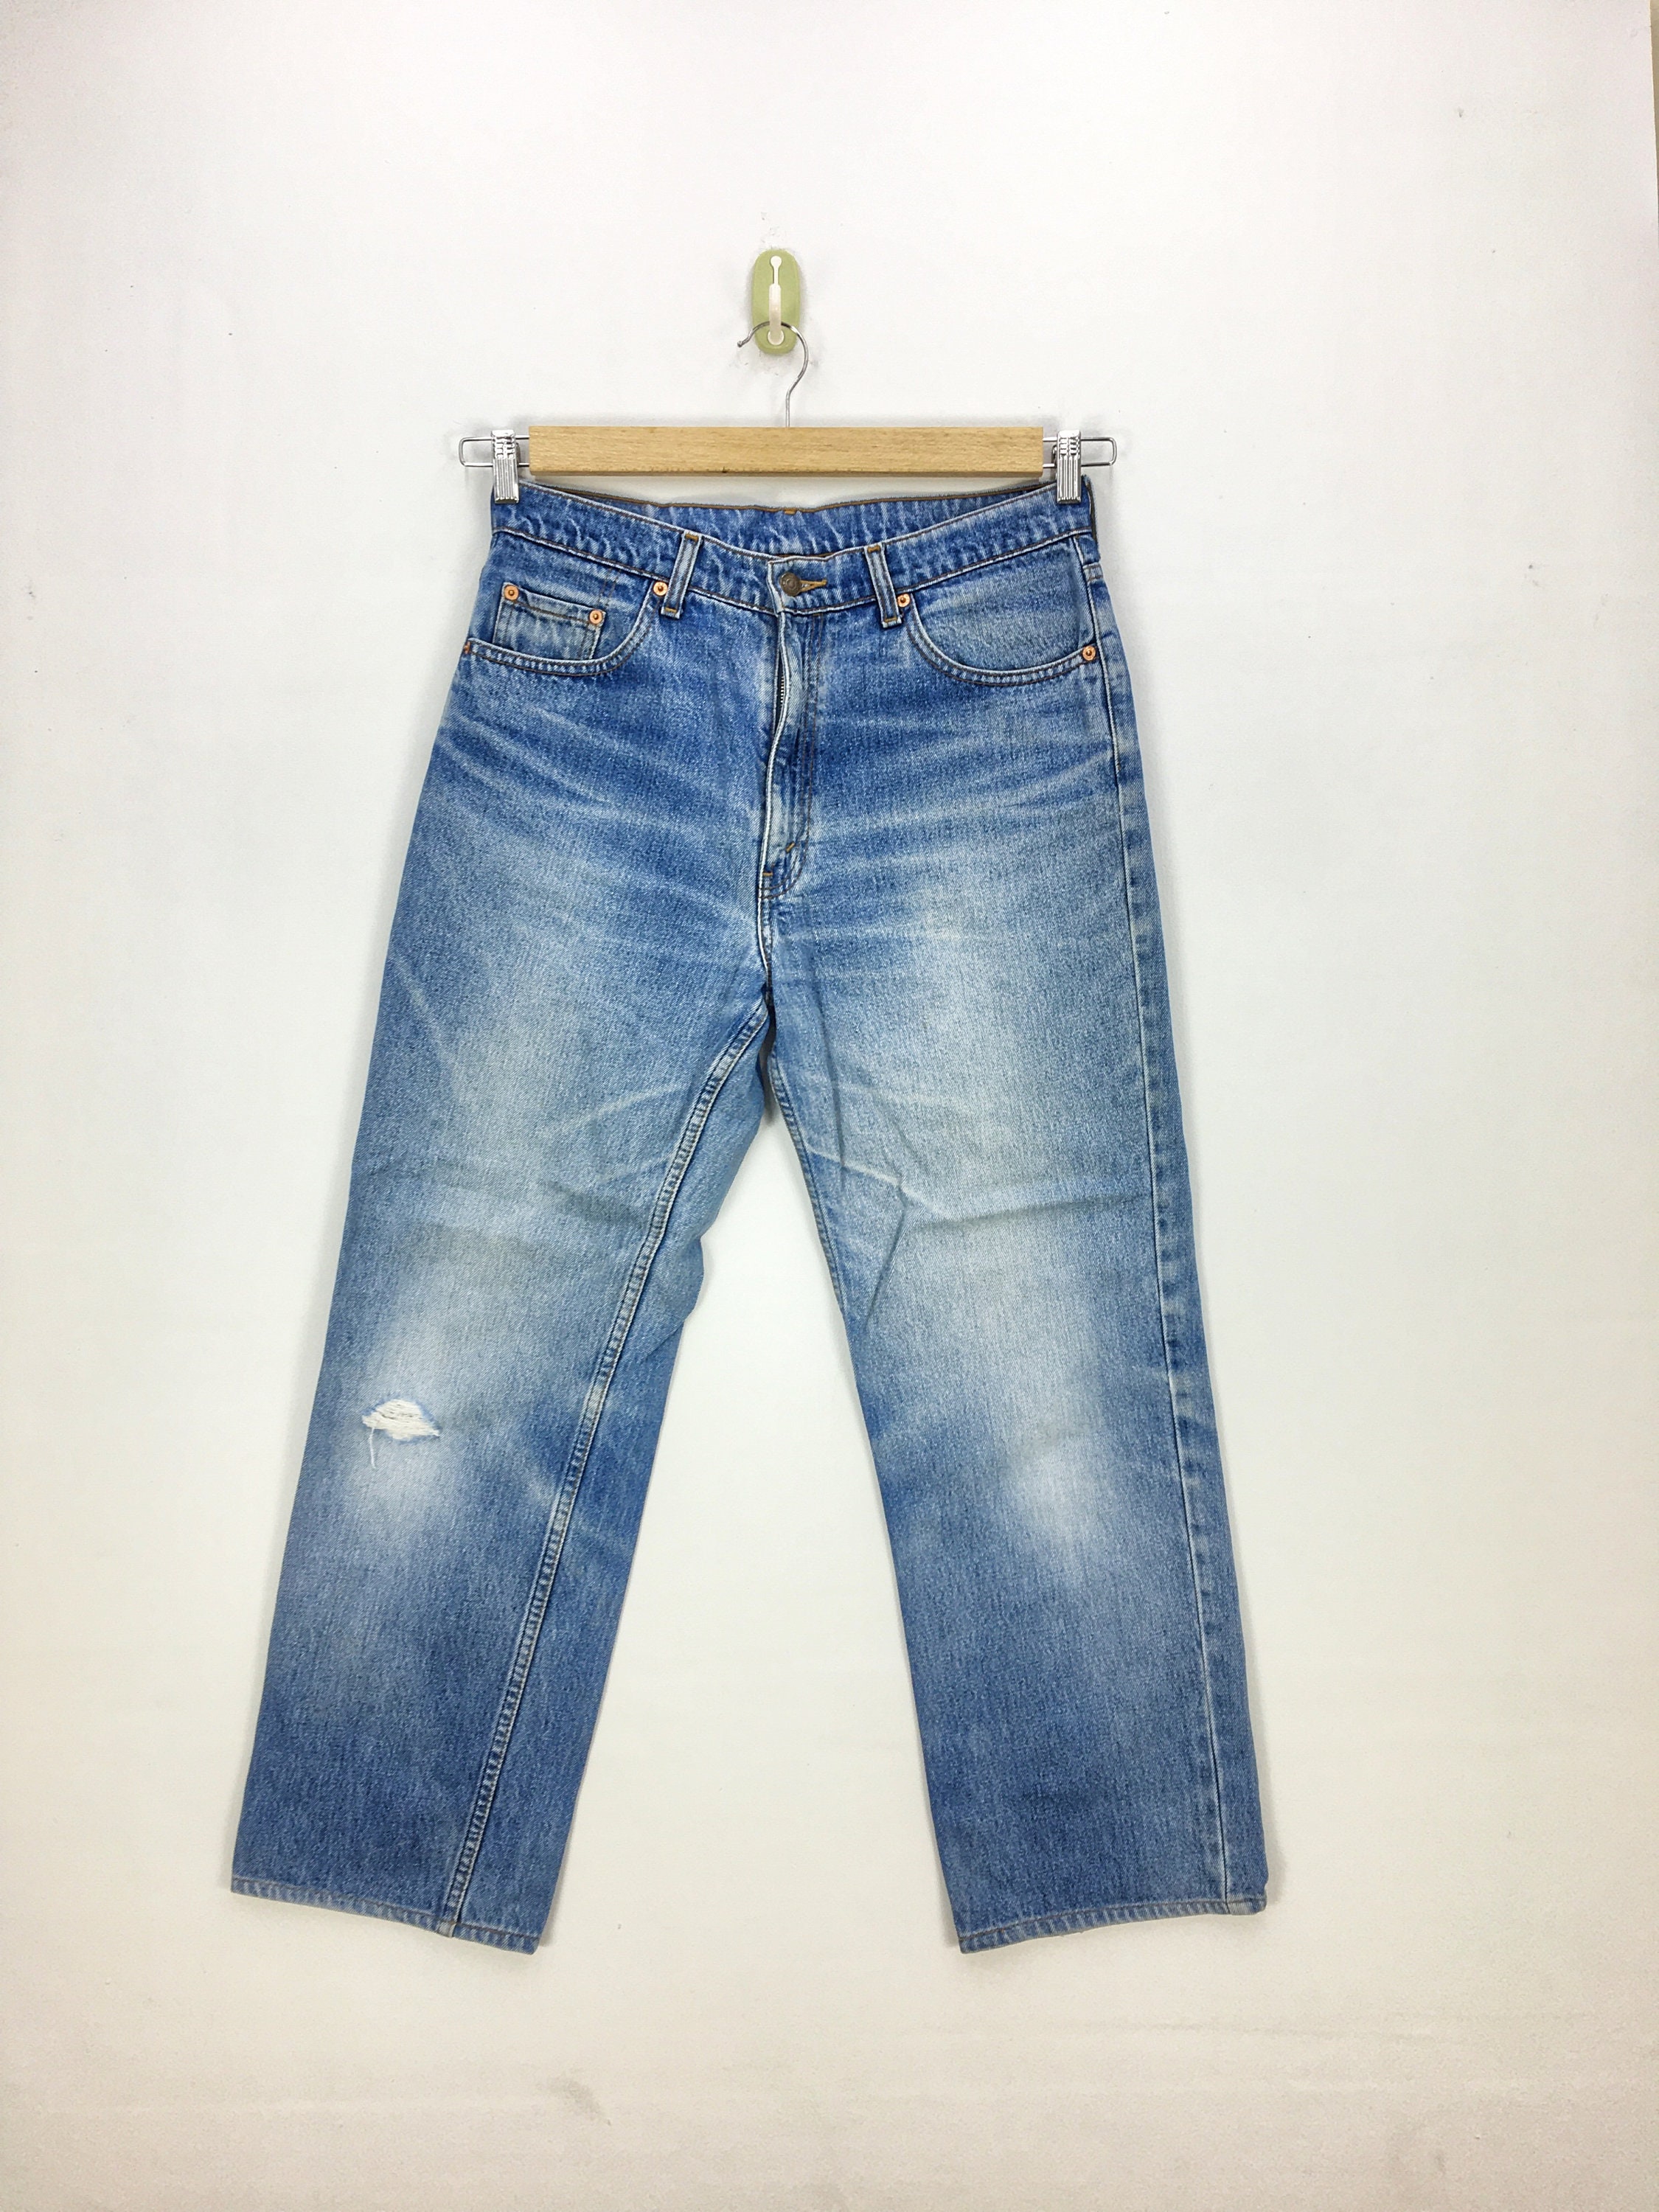 W32 L27 Vintage Levis 515 Jeans Pants Levi's 515 - Etsy Hong Kong